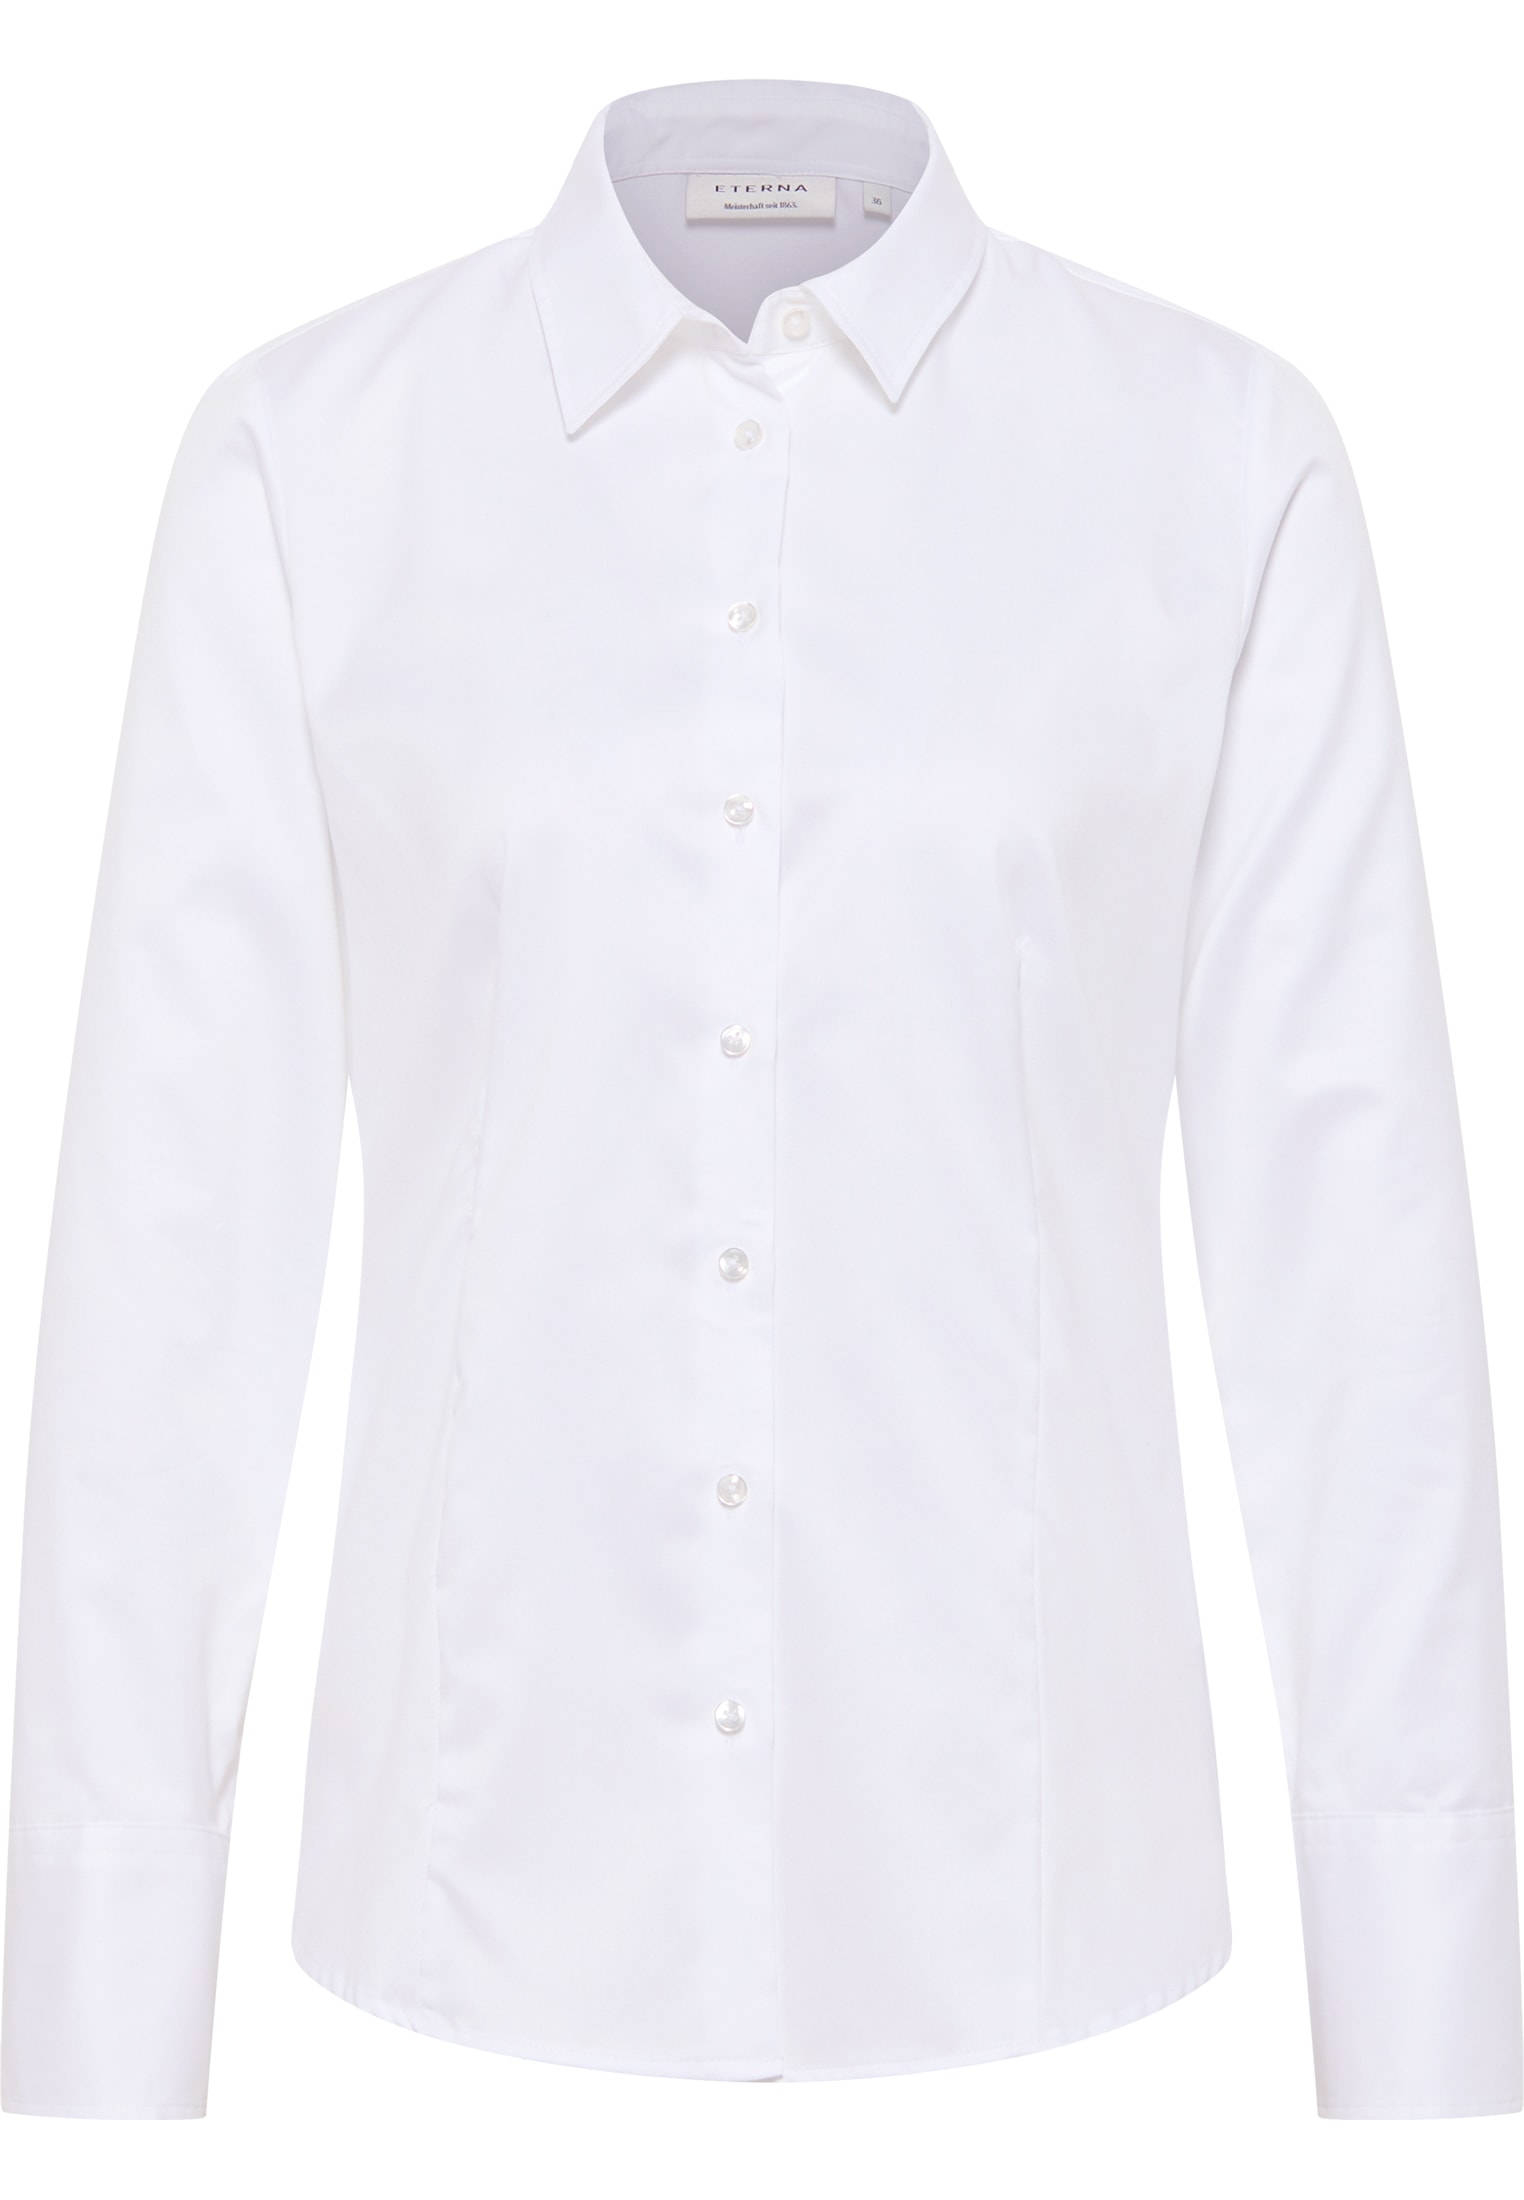 Cover Shirt Blouse in white | plain 2BL00075-00-01-38-1/1 | sleeve | | 38 white long